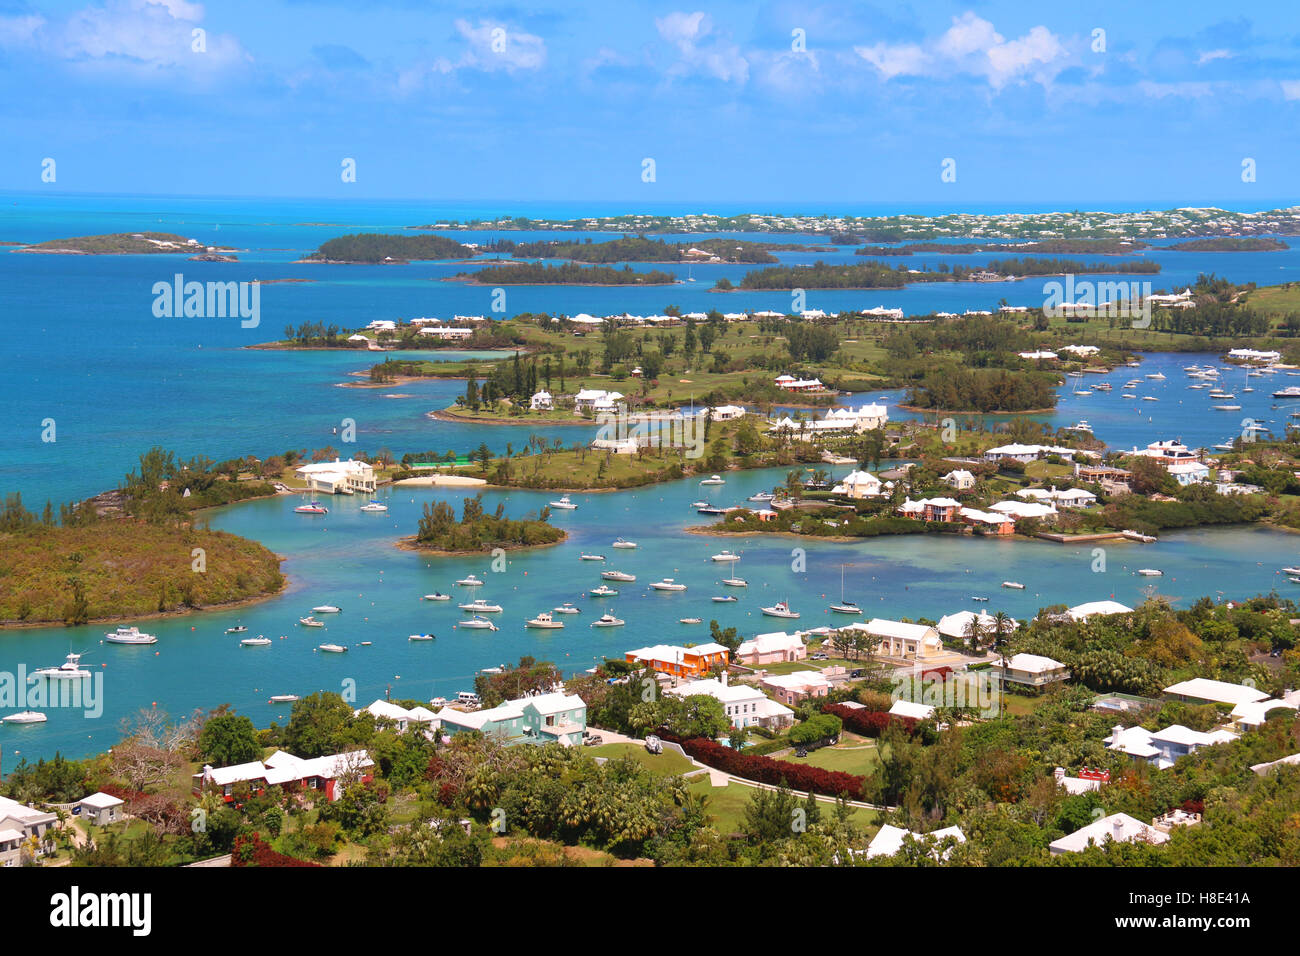 Les Bermudes paysage tropical Vue de dessus, St Anne's, les Bermudes. Banque D'Images